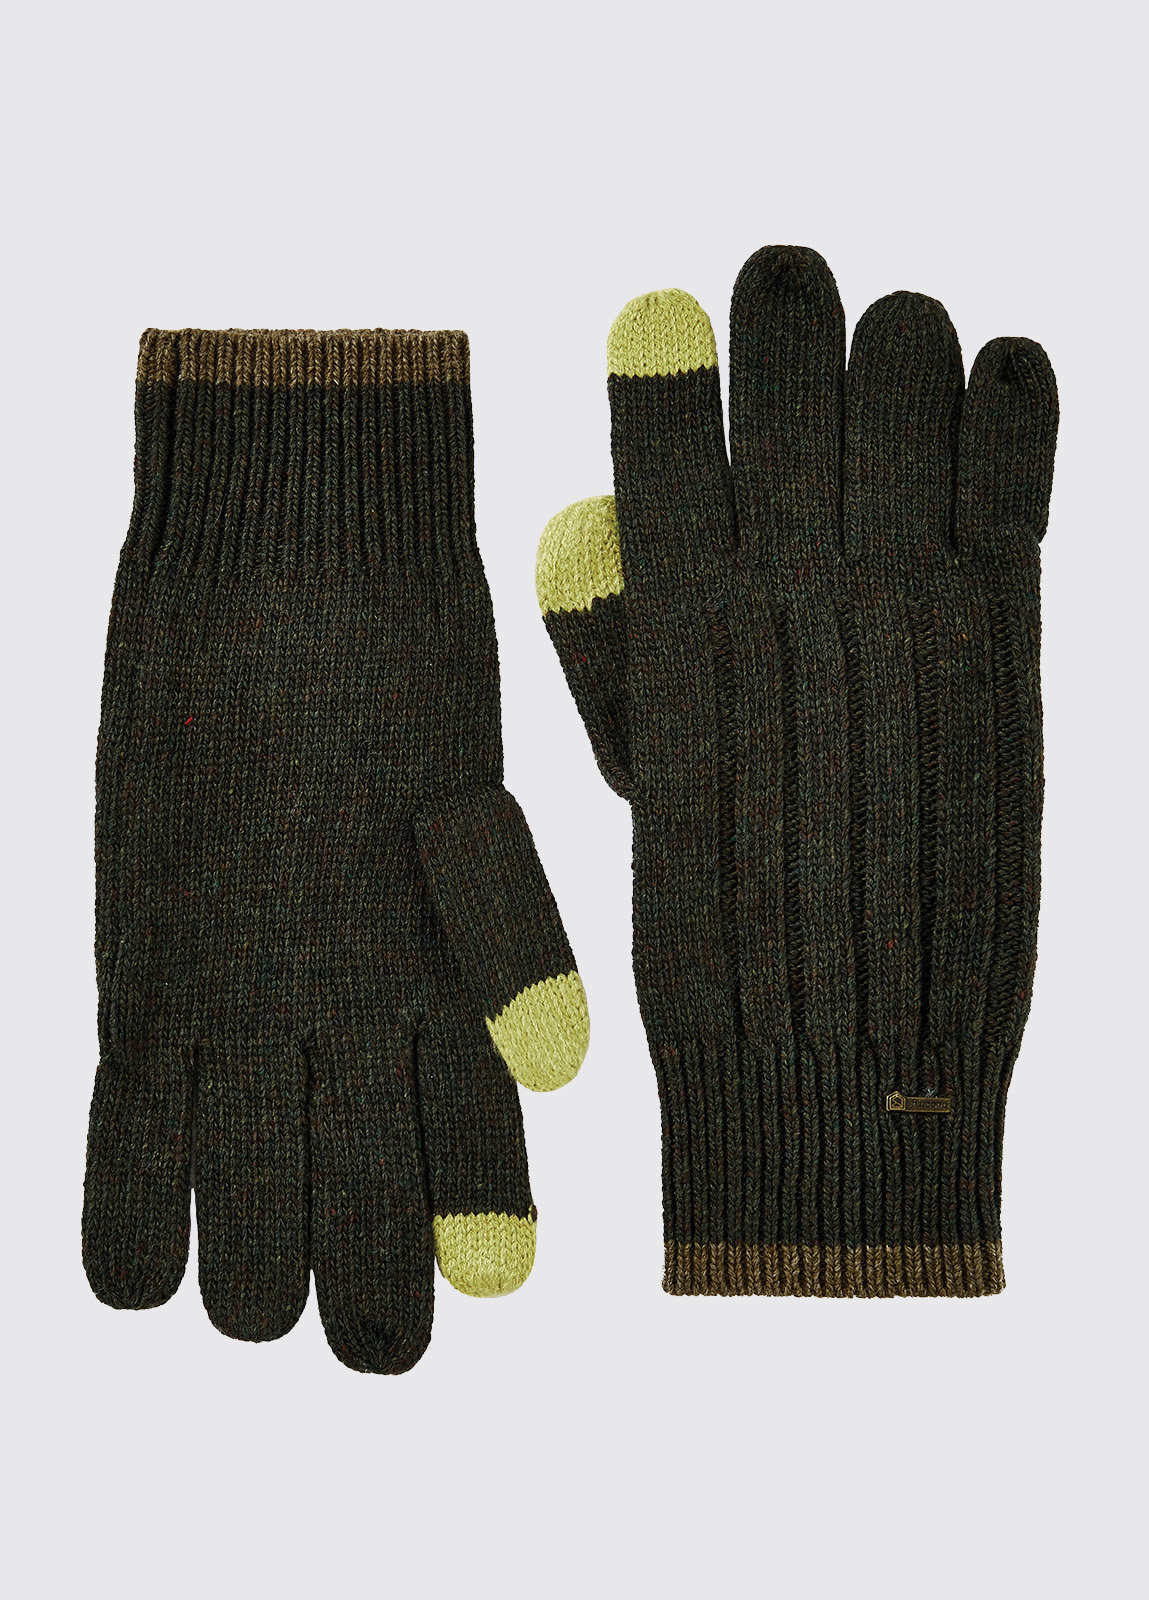 Marsh Knitted Gloves - Olive